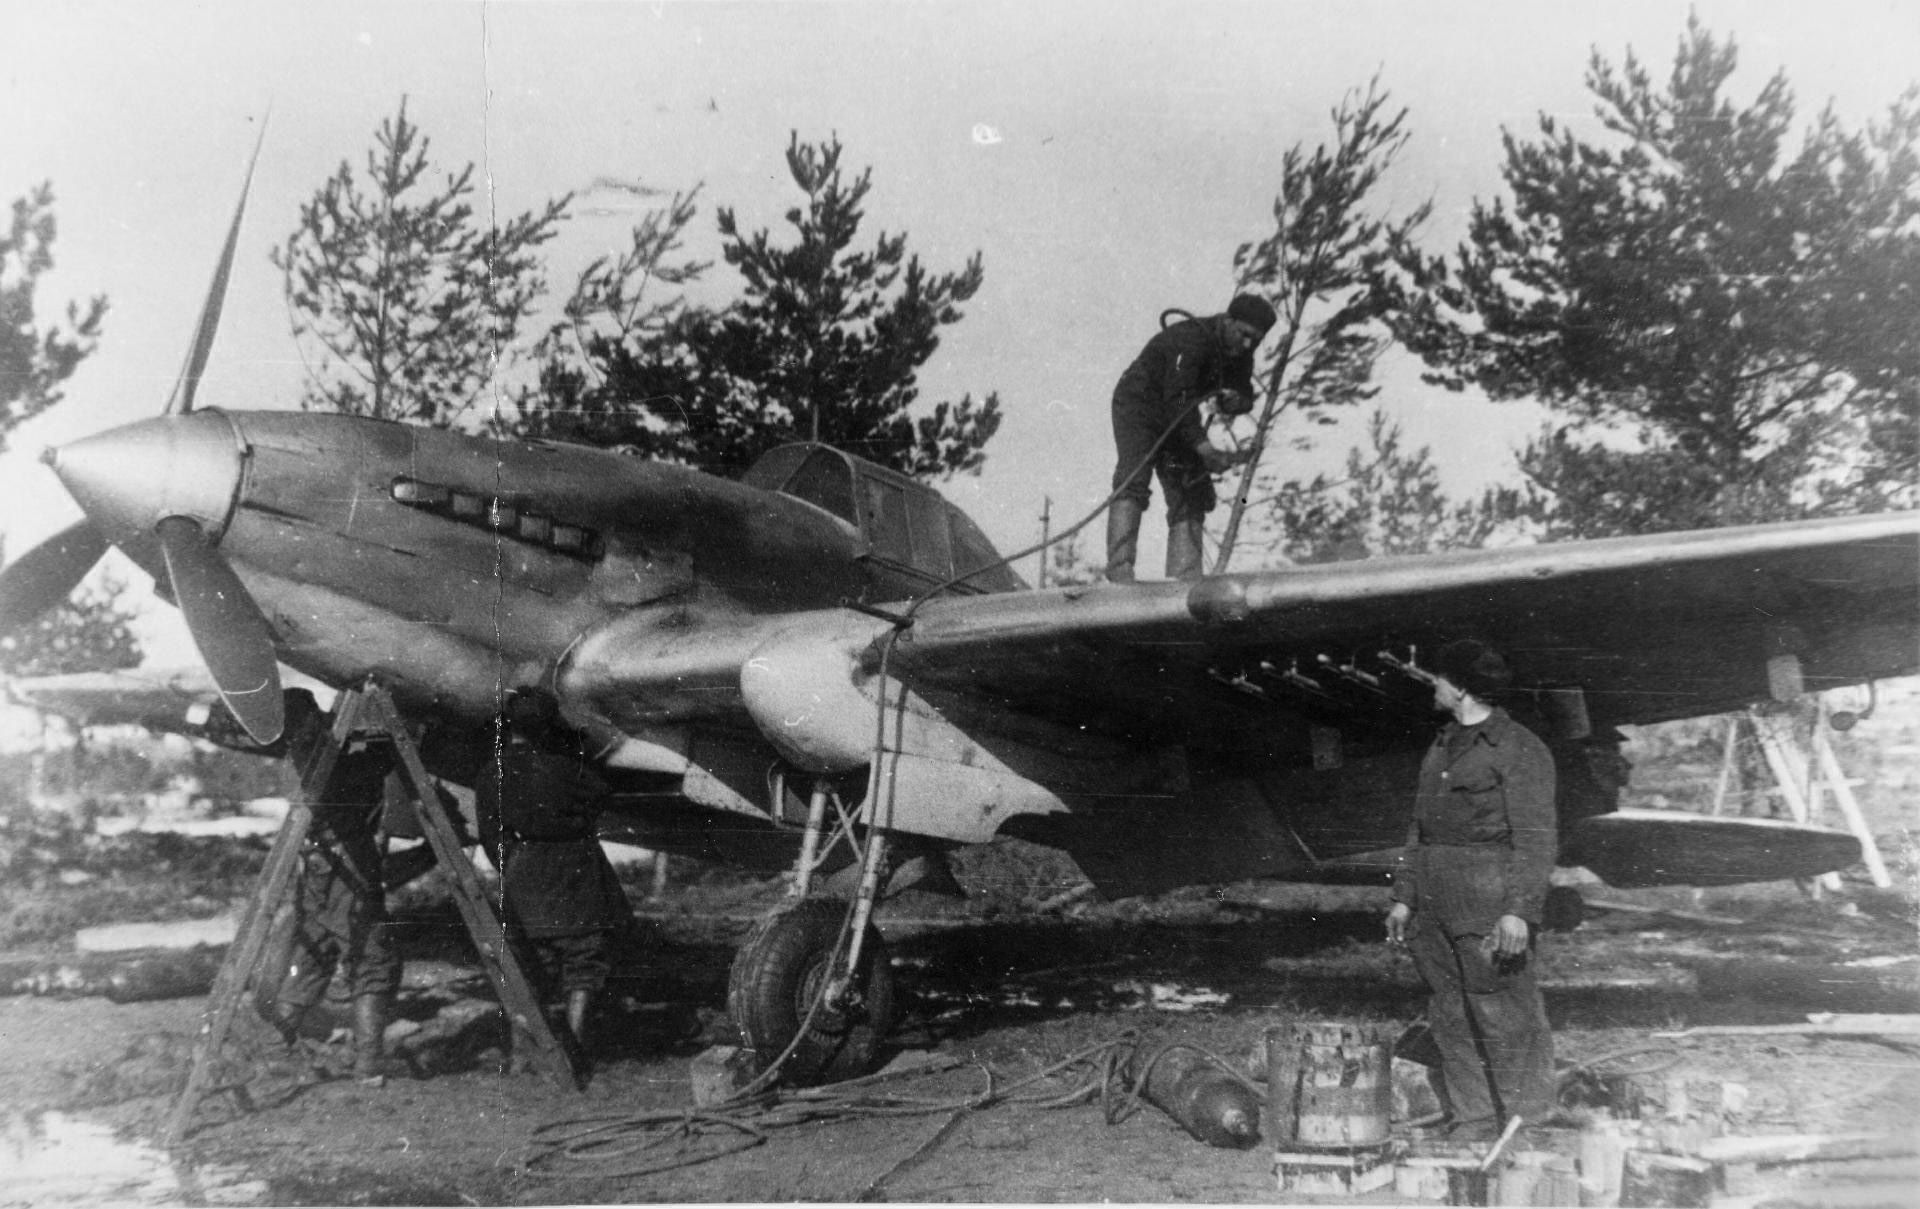 An early Ilyushin Il-2